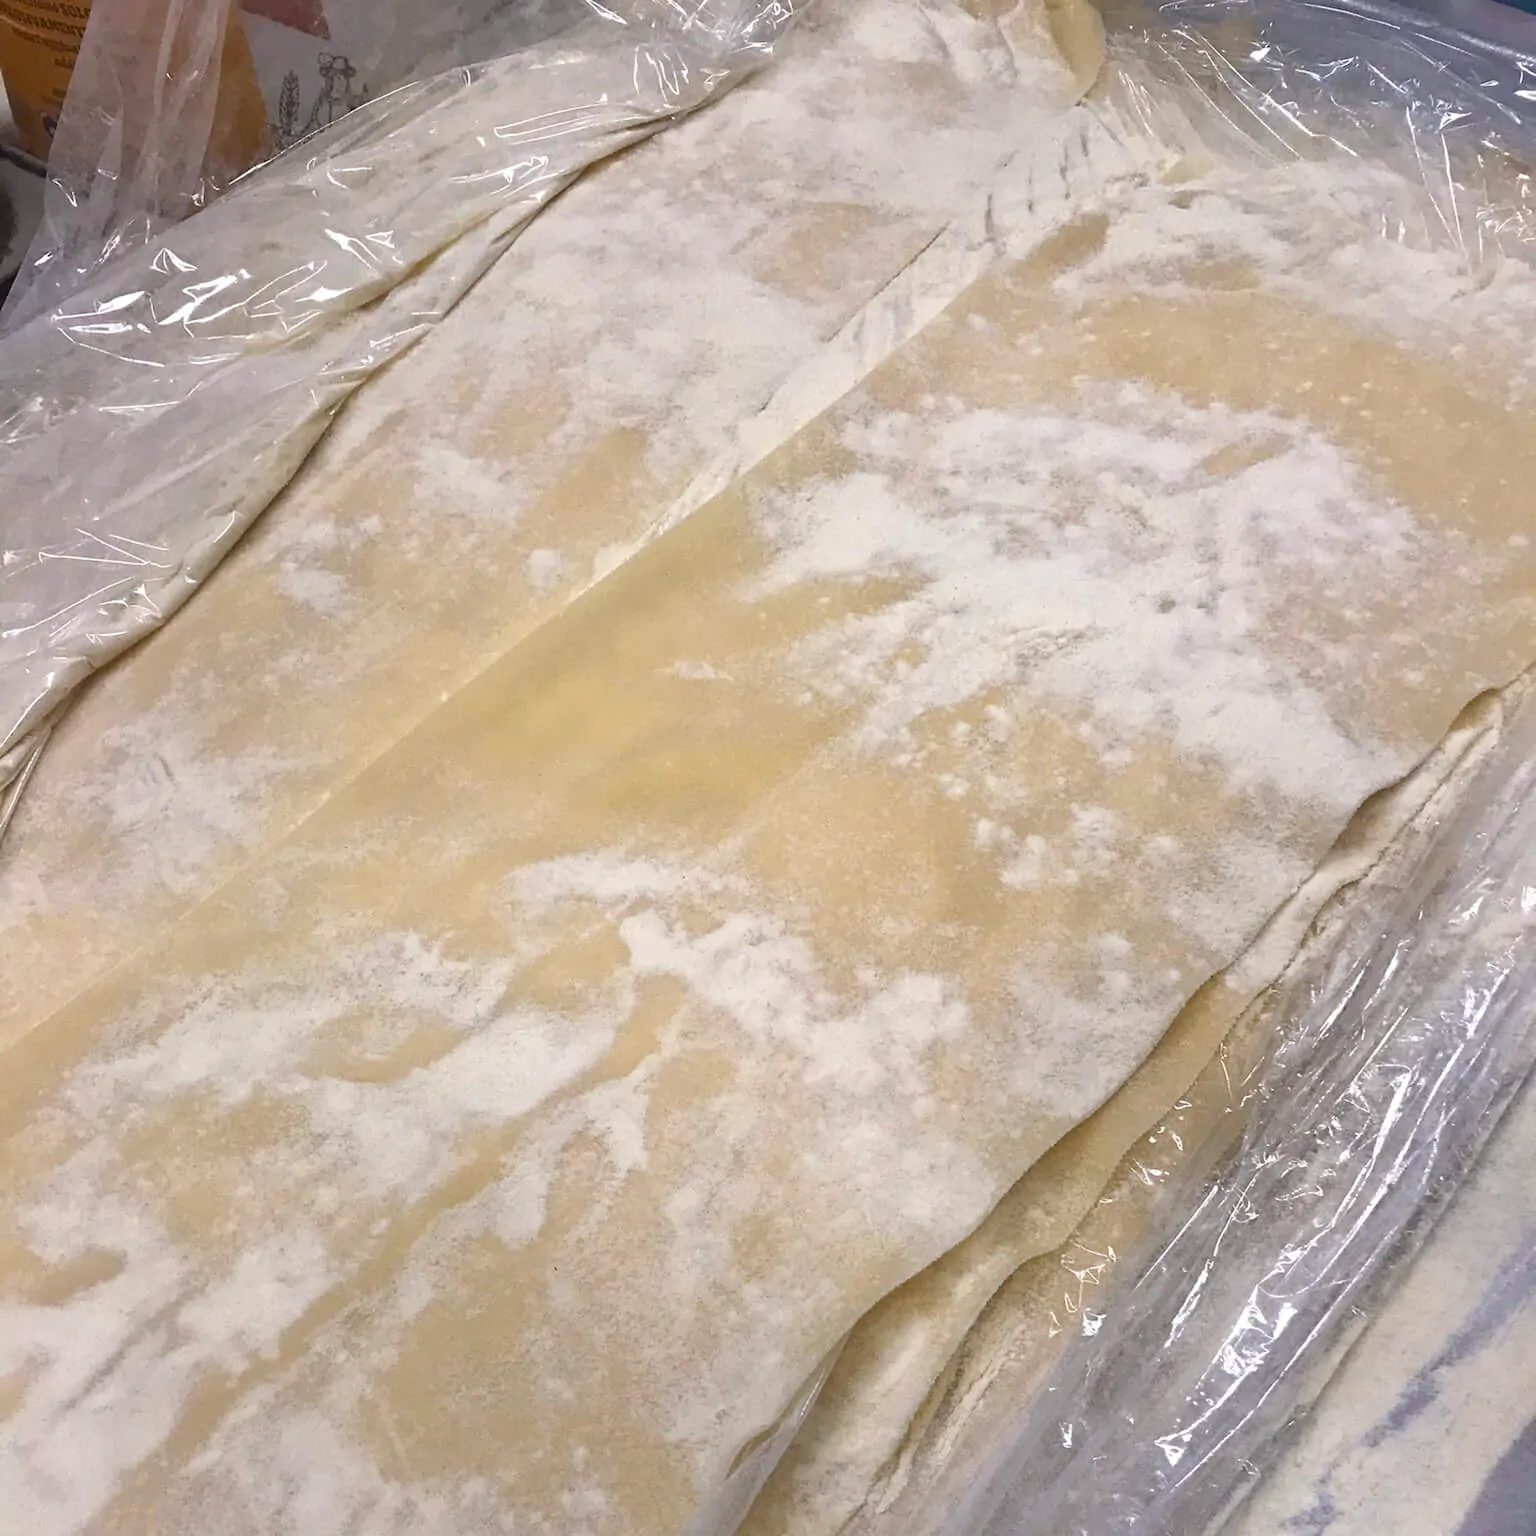 Homemade lasagna pasta sheets